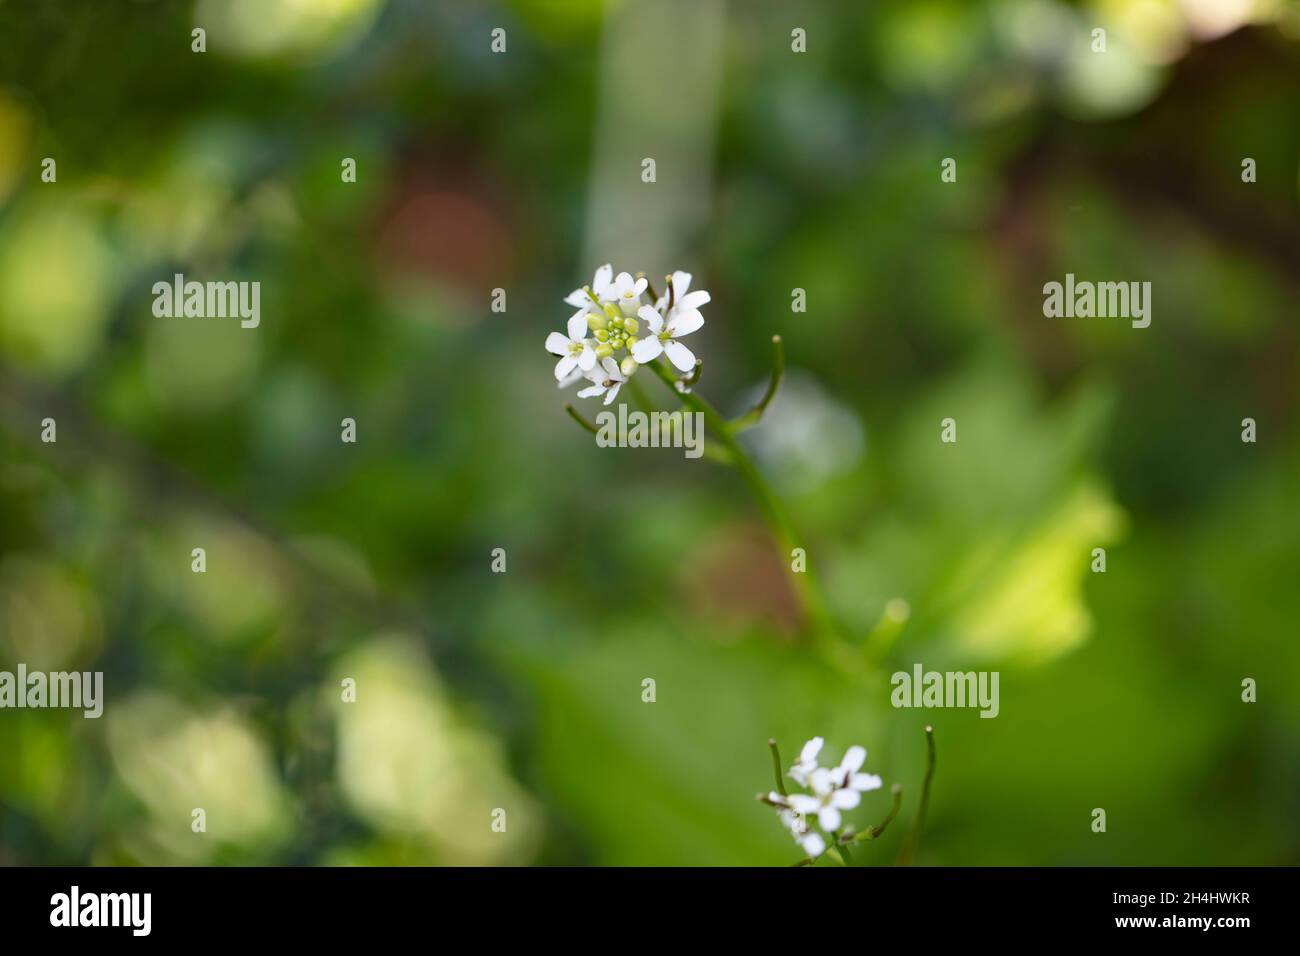 Nahaufnahme: Kleine weiße Blüten der Pfeilkresse (Cardaria draba) in einem Garten in NRW, Deutschland. Stock Photo